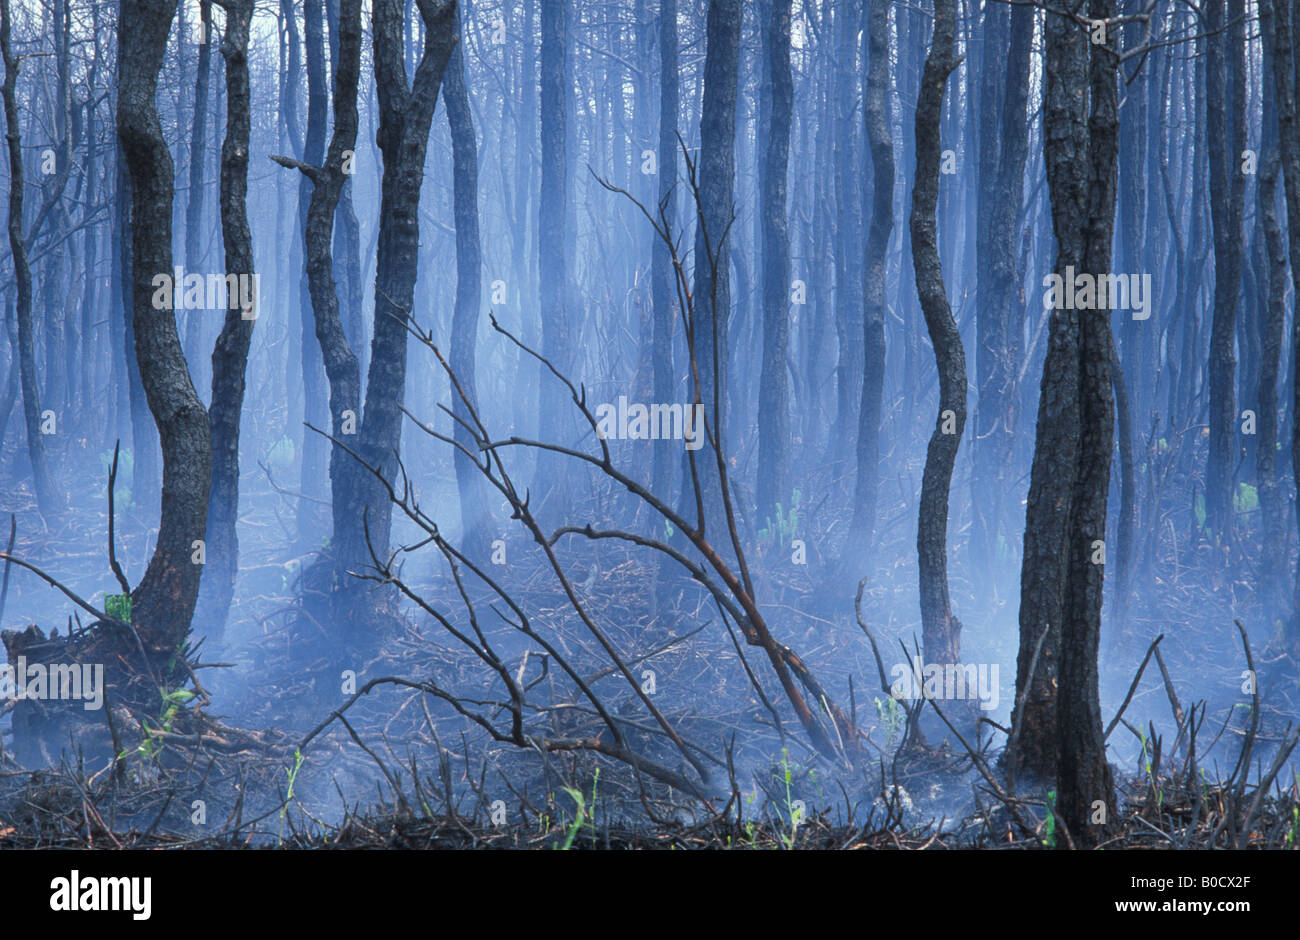 Folgen von Waldbränden südöstlichen USA, von Bill Lea/Dembinsky Foto Assoc Stockfoto